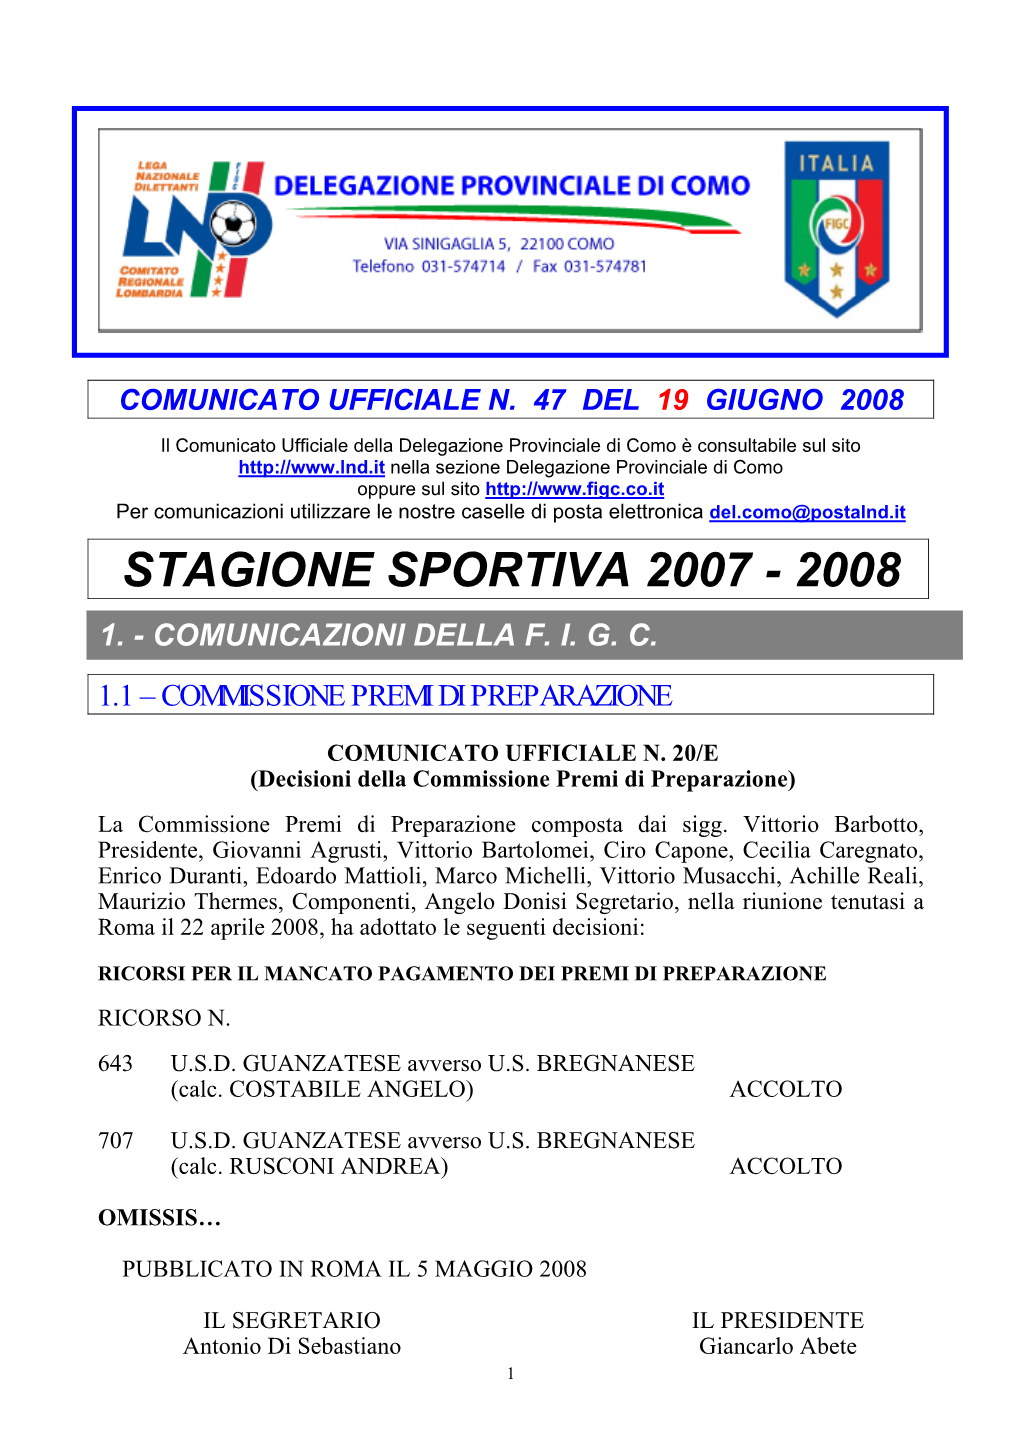 Stagione Sportiva 2007 - 2008